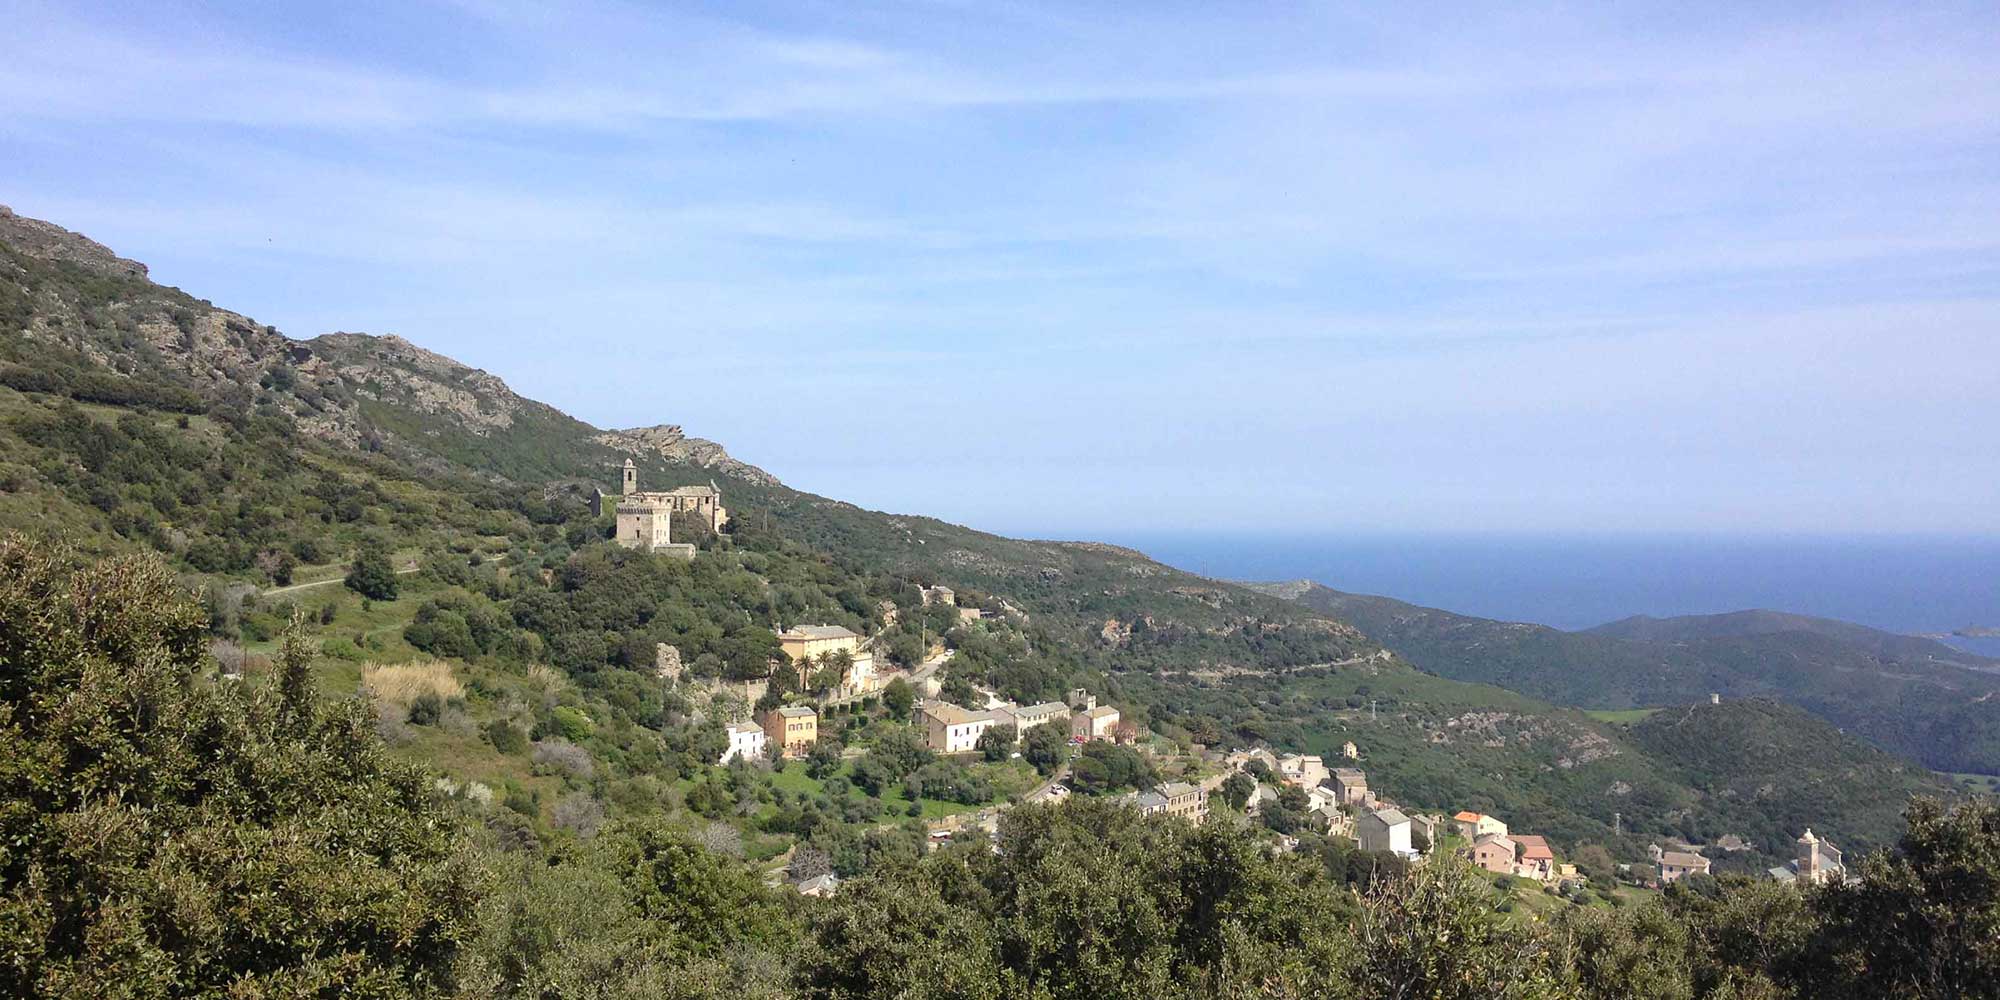 Location de vacances Maison avec terrasse à Rogliano (village) pour 5 personnes dans le Cap Corse